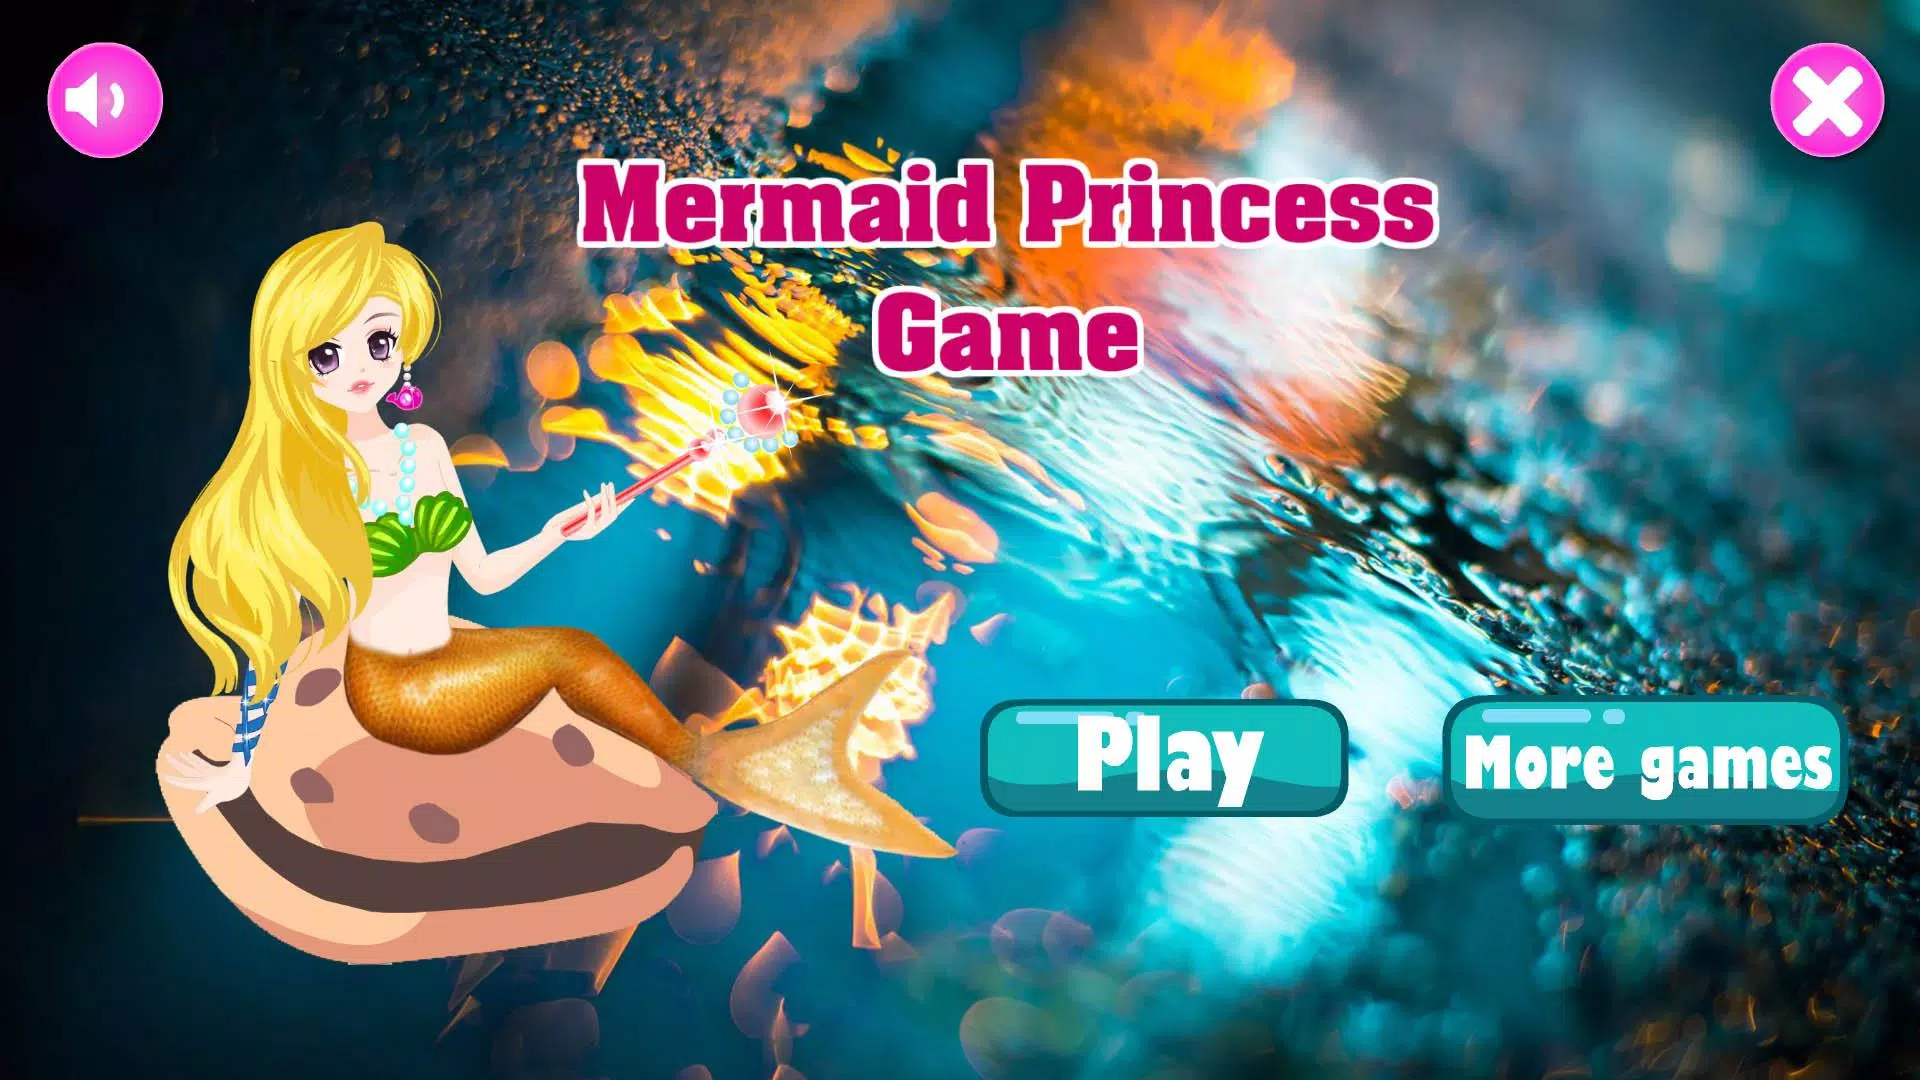 الأميرة حورية البحر لعبة for Android - APK Download